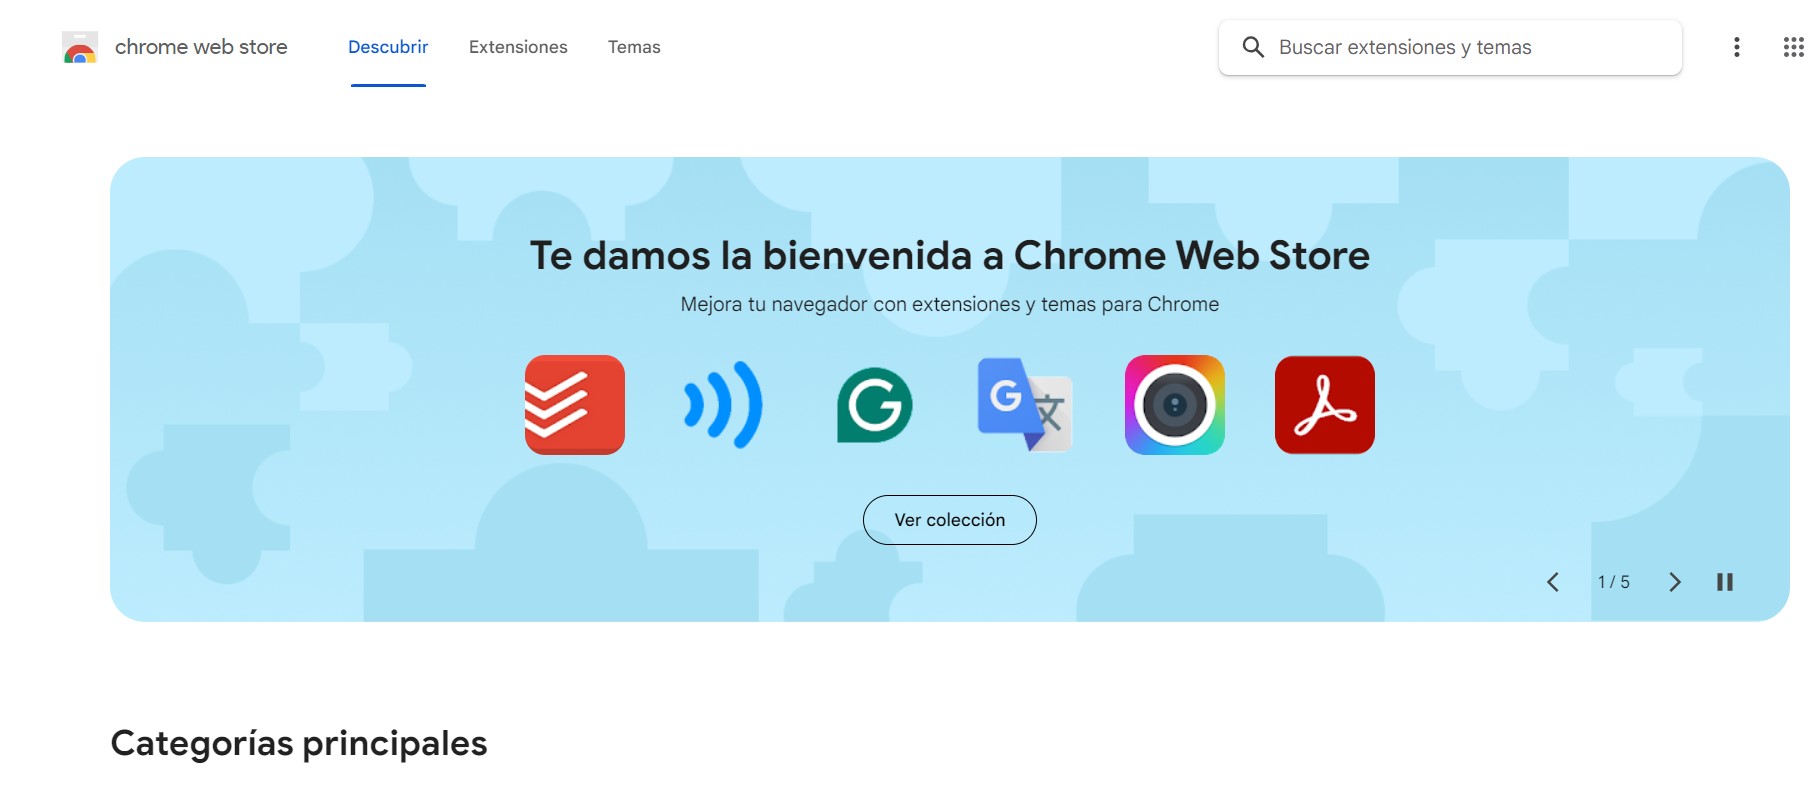 Bing vs Chrome: la nueva guerra de los buscadores